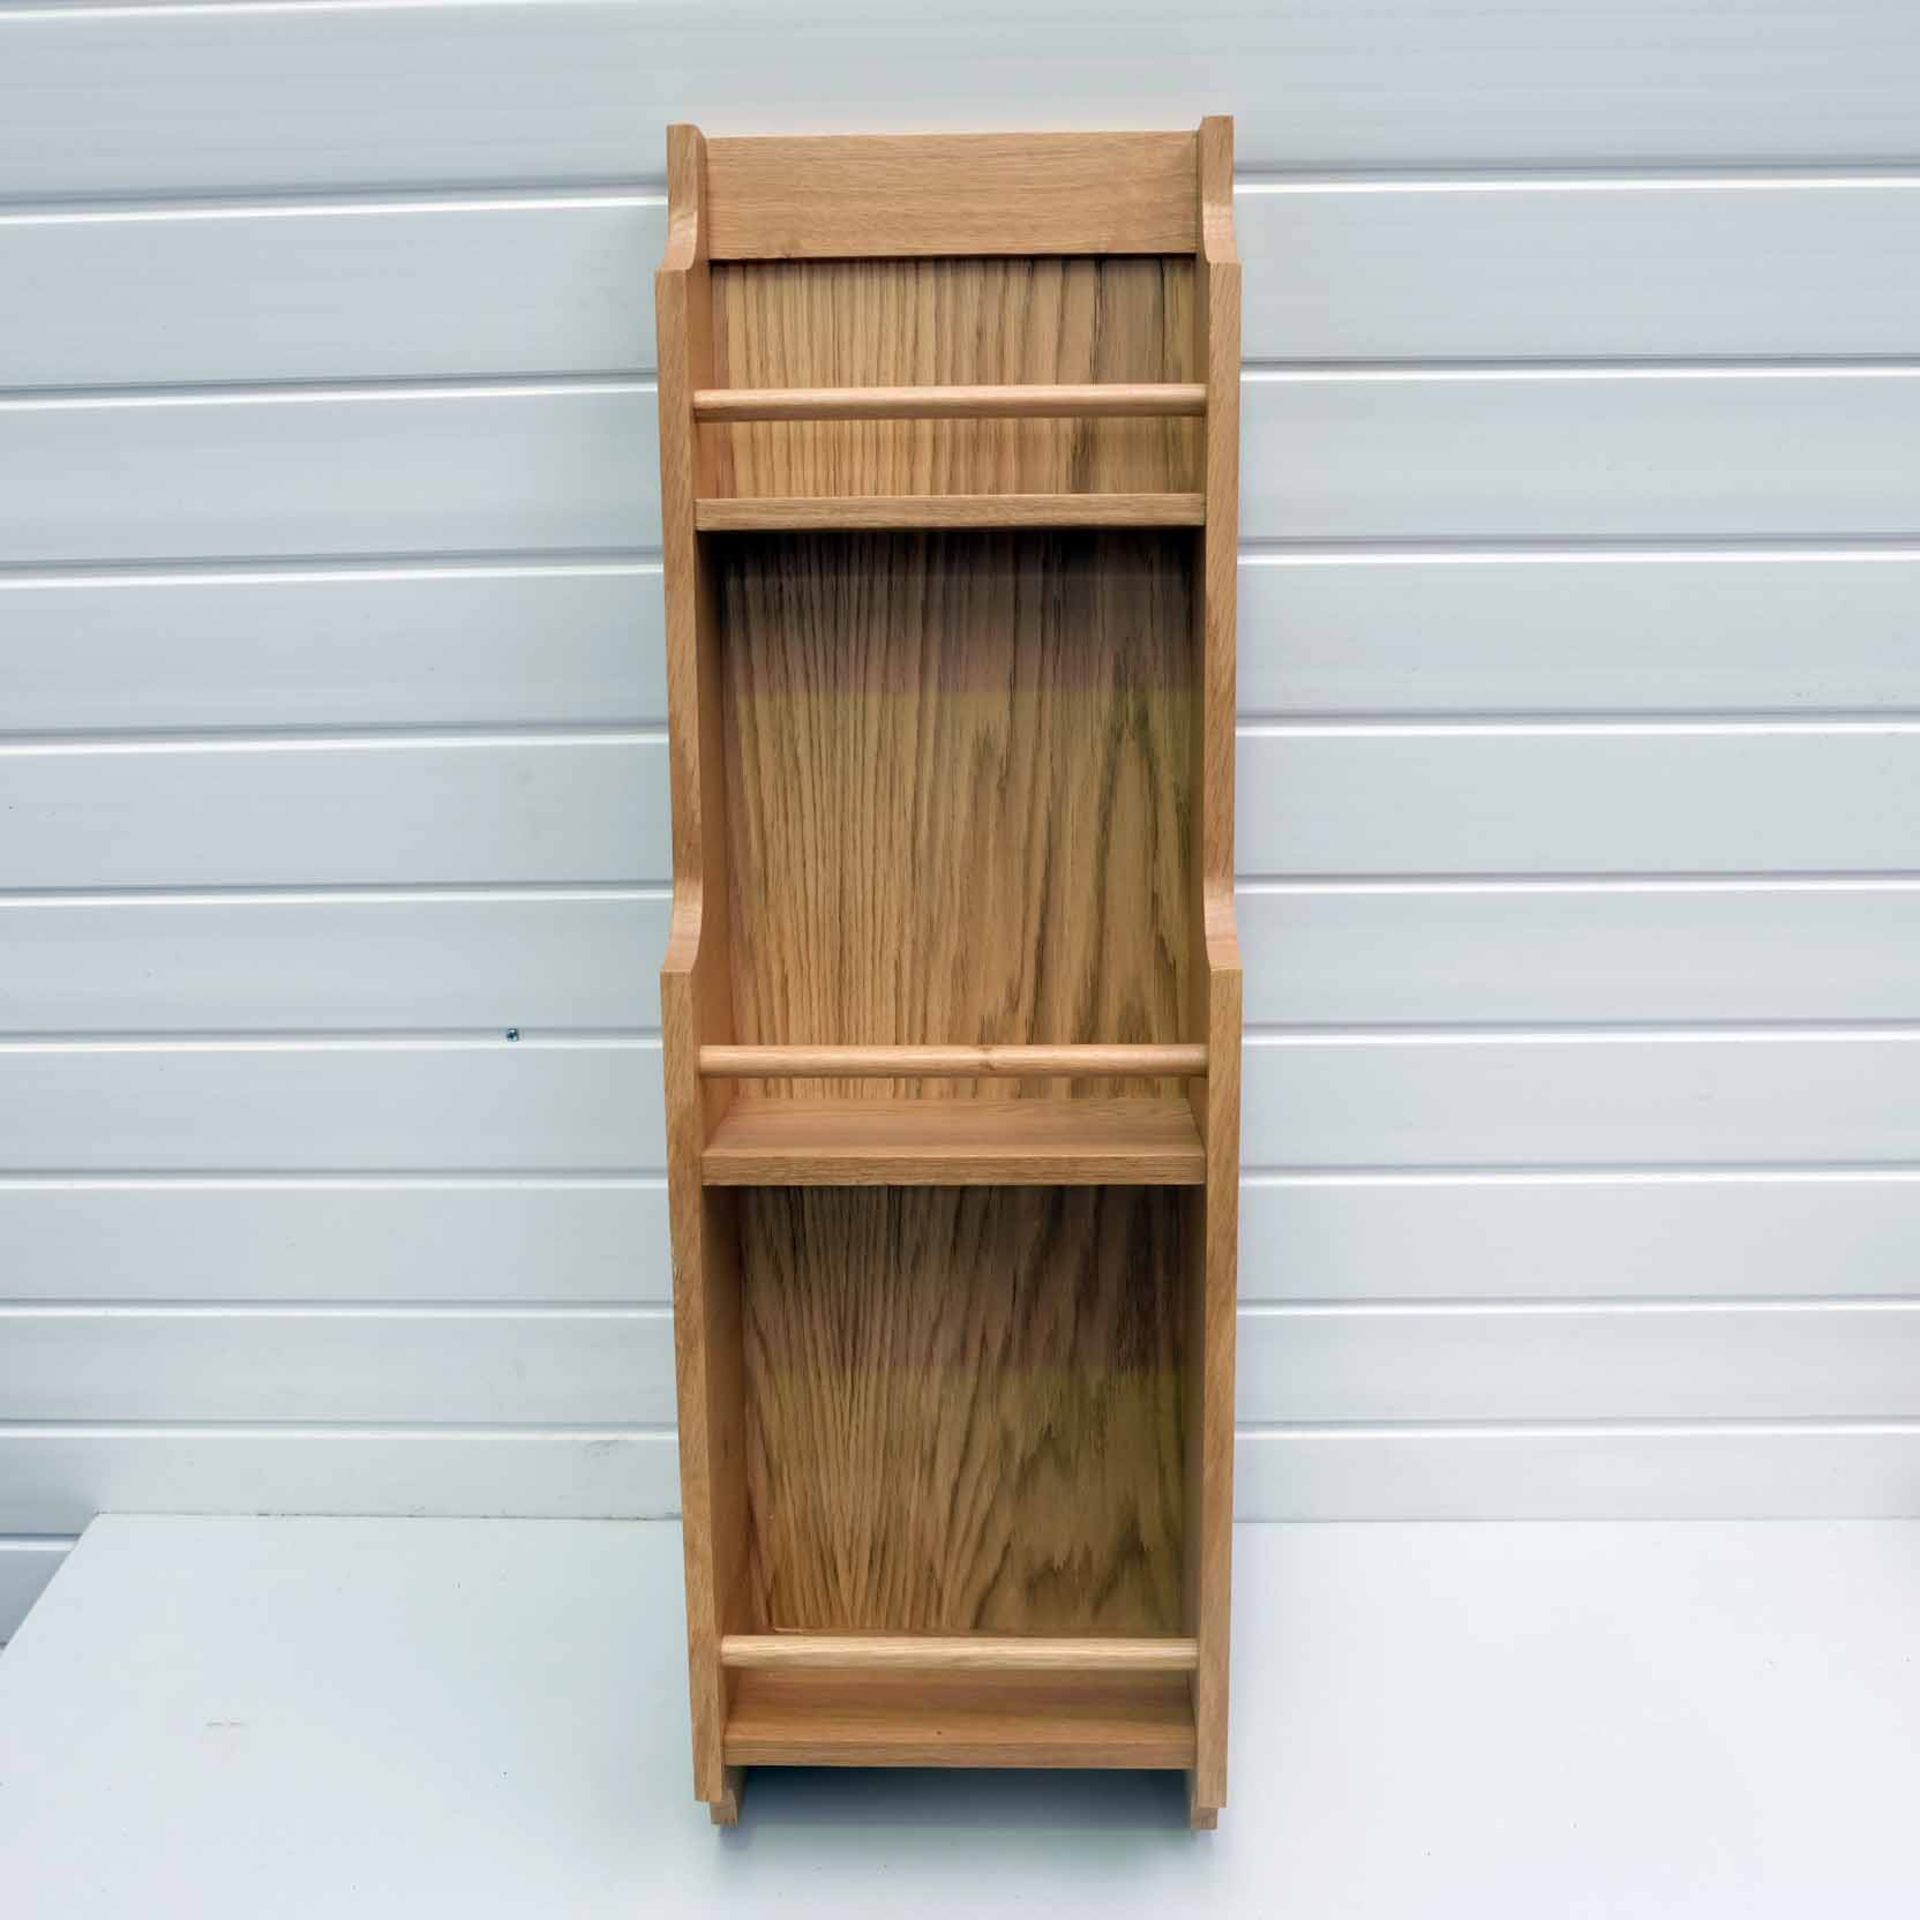 Solid Wood Spice Rack. Size 280mm W x 130mm D x 900mm H. 3 x Shelves.